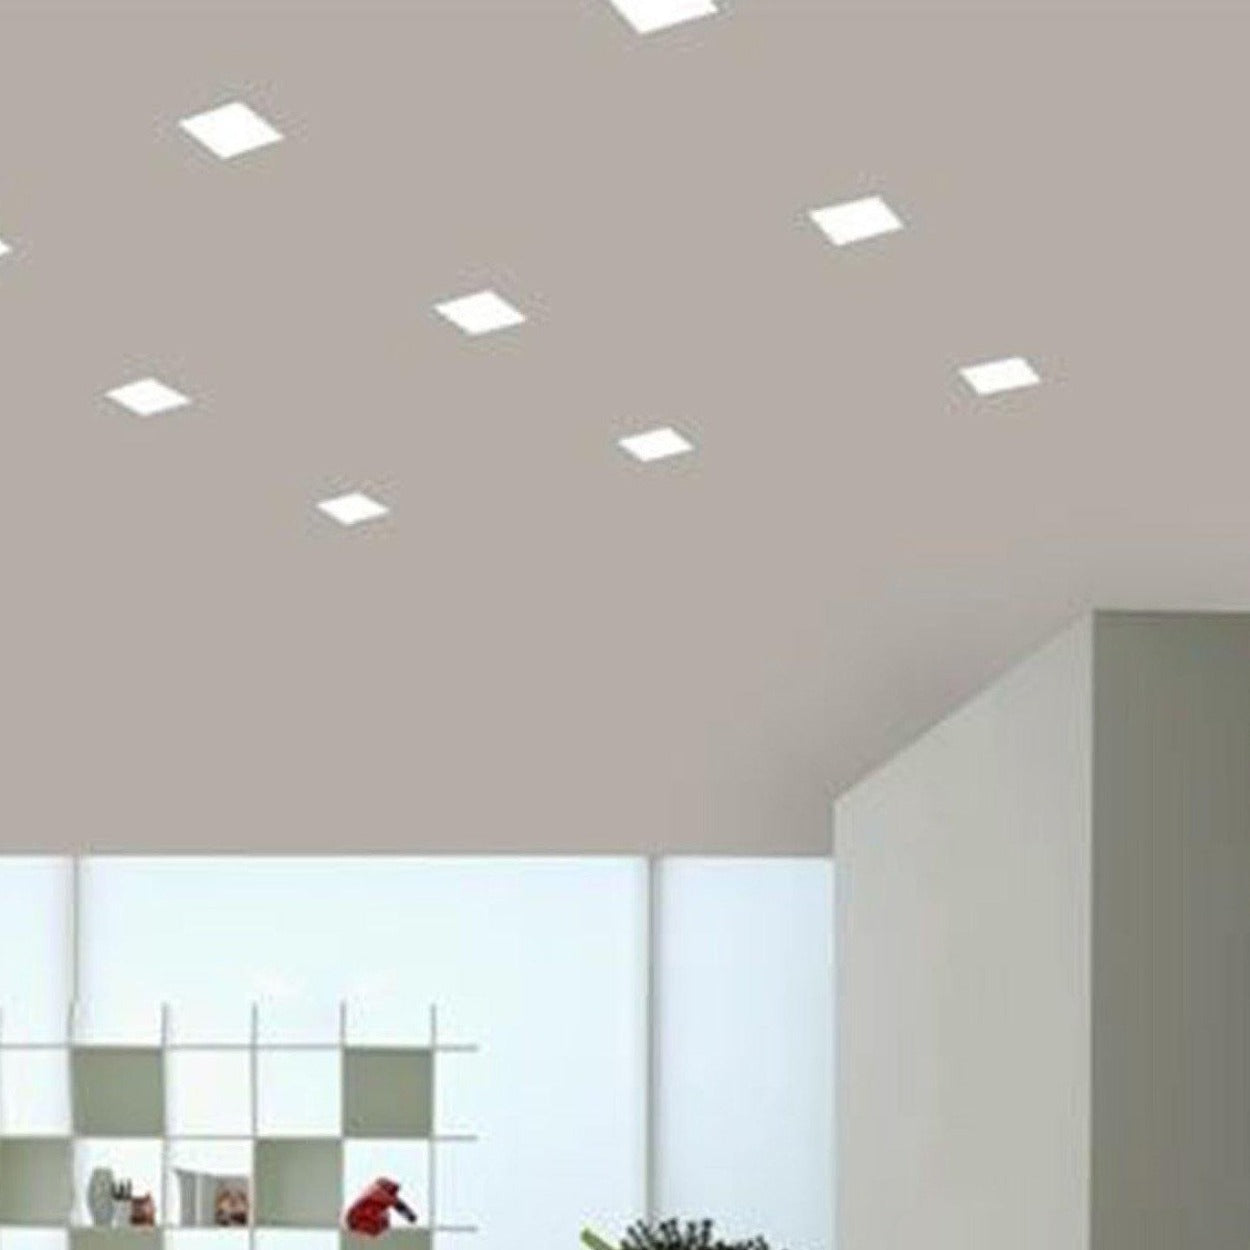 ANKUR REXX SQUARE 15W LED PANEL LIGHT - Ankur Lighting